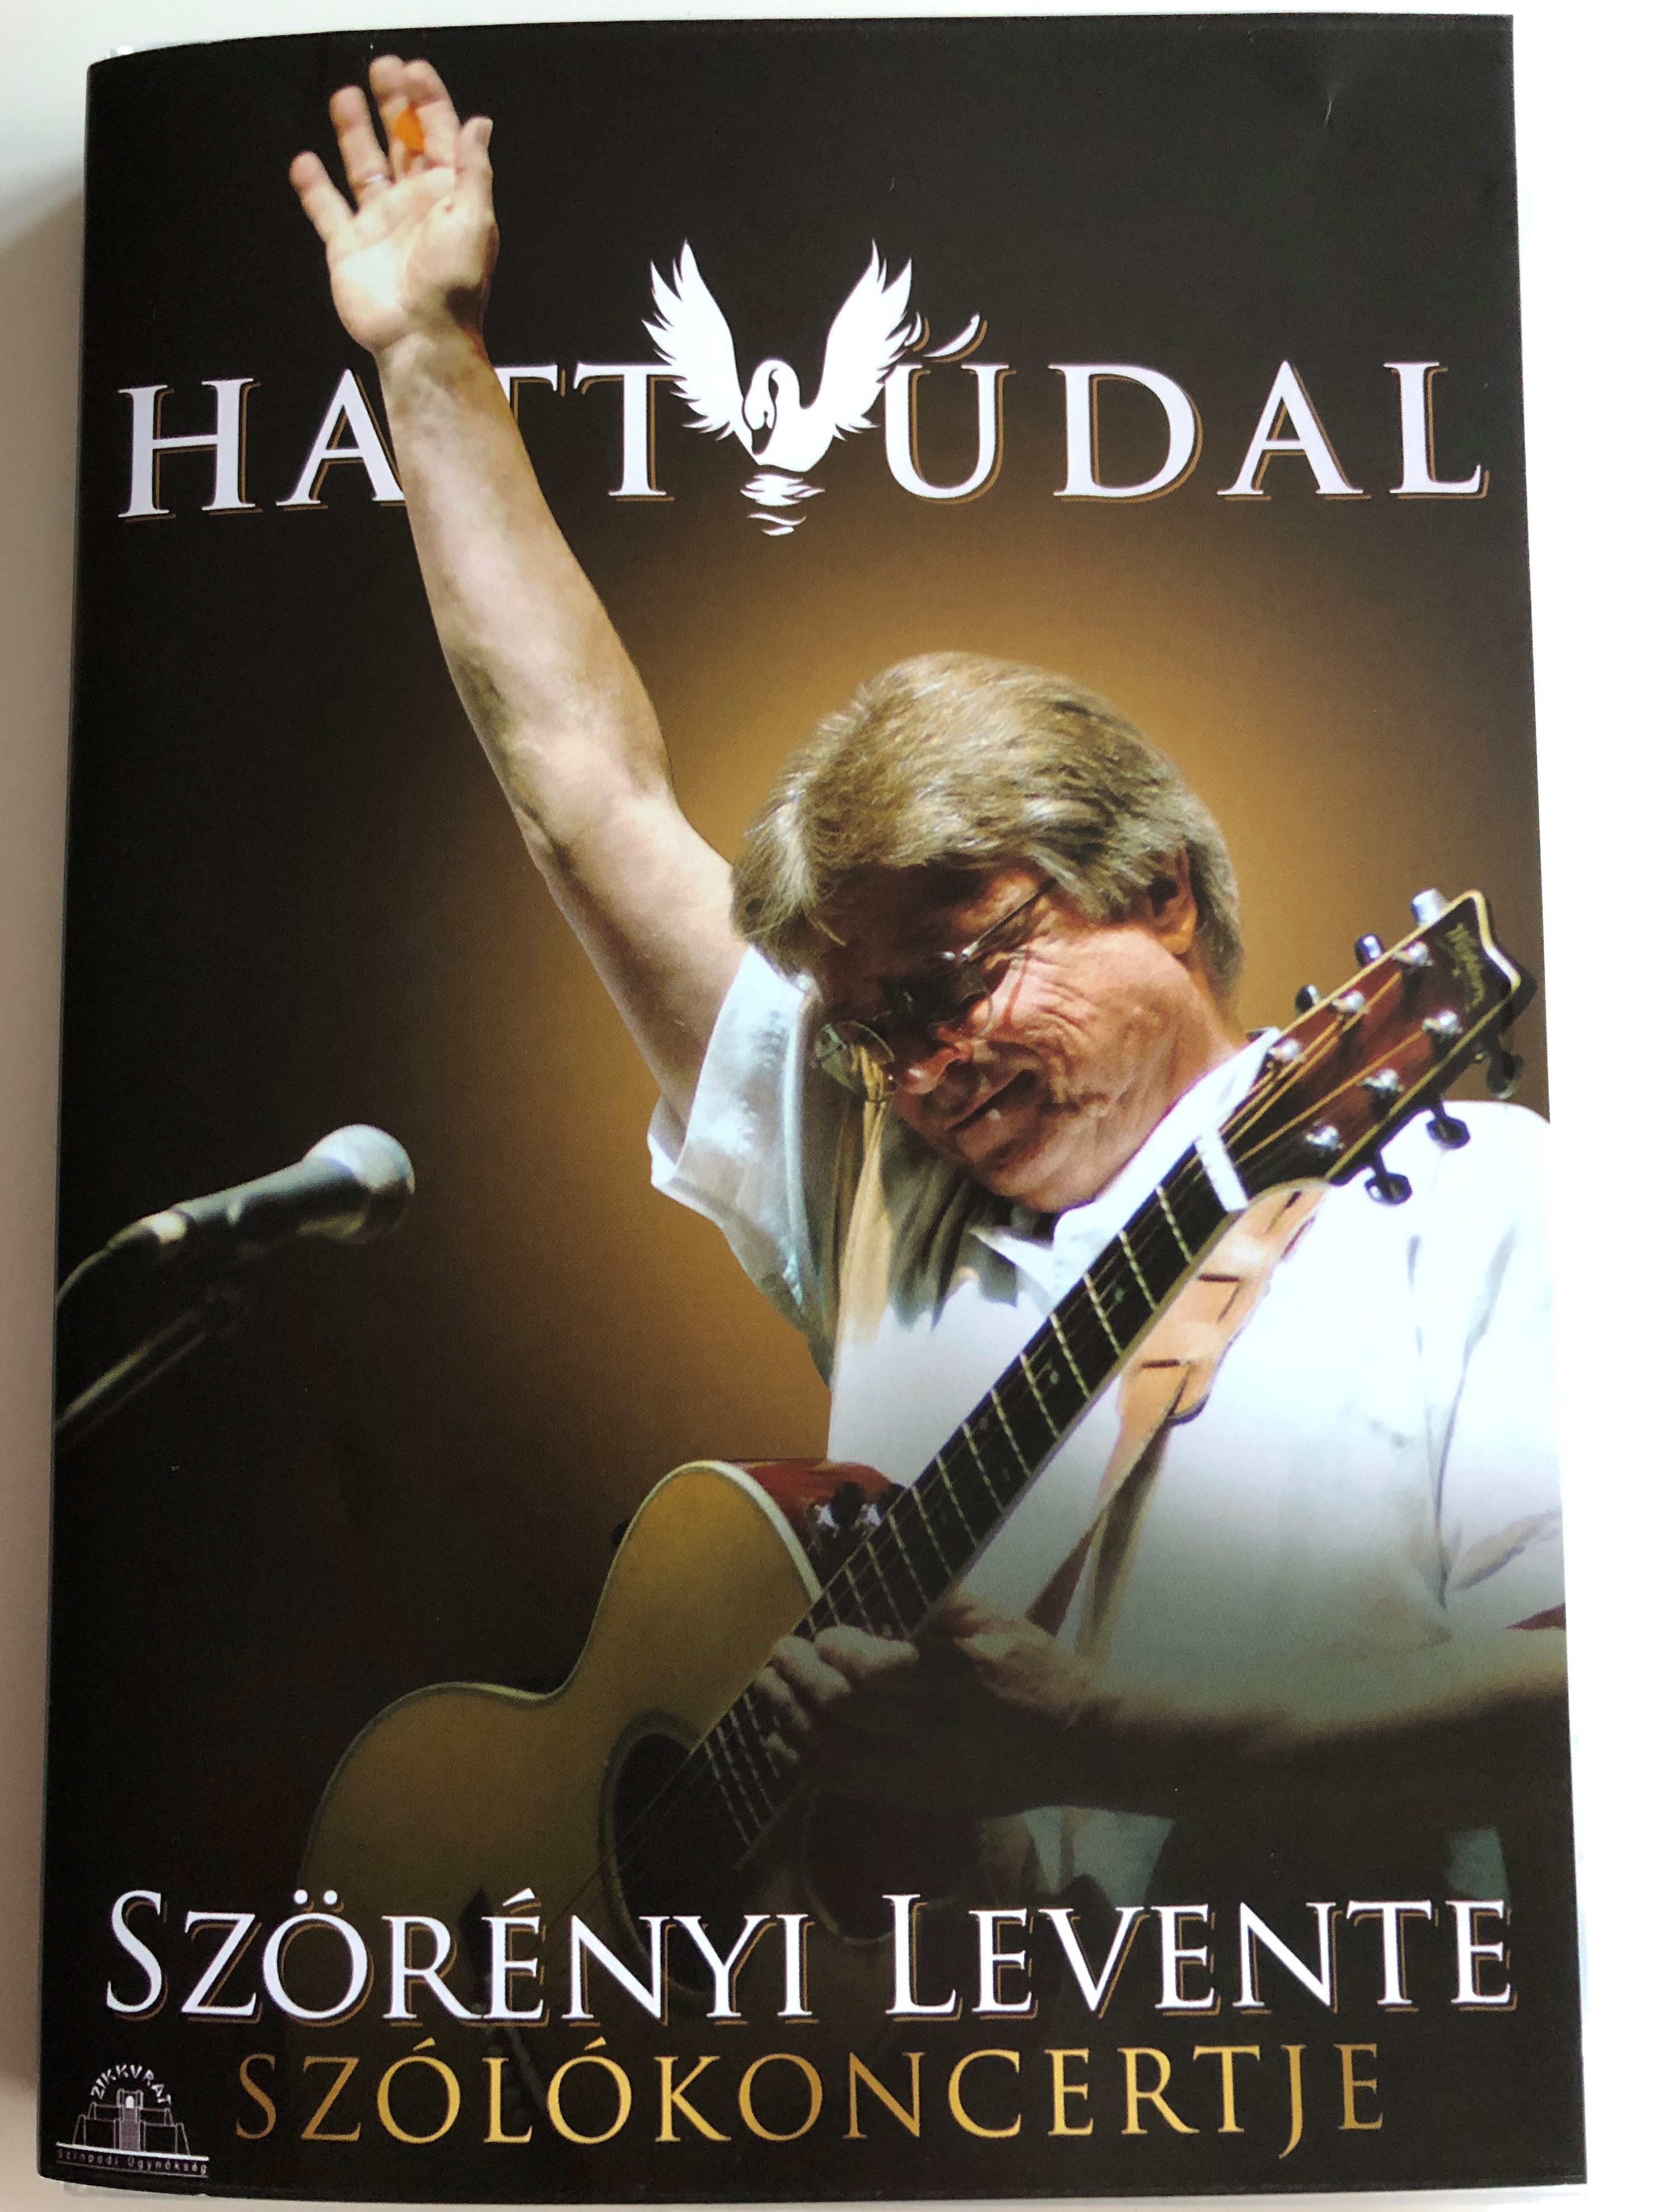 Hattyúdal - Szörényi Levente Szólókoncertje DVD  1.JPG